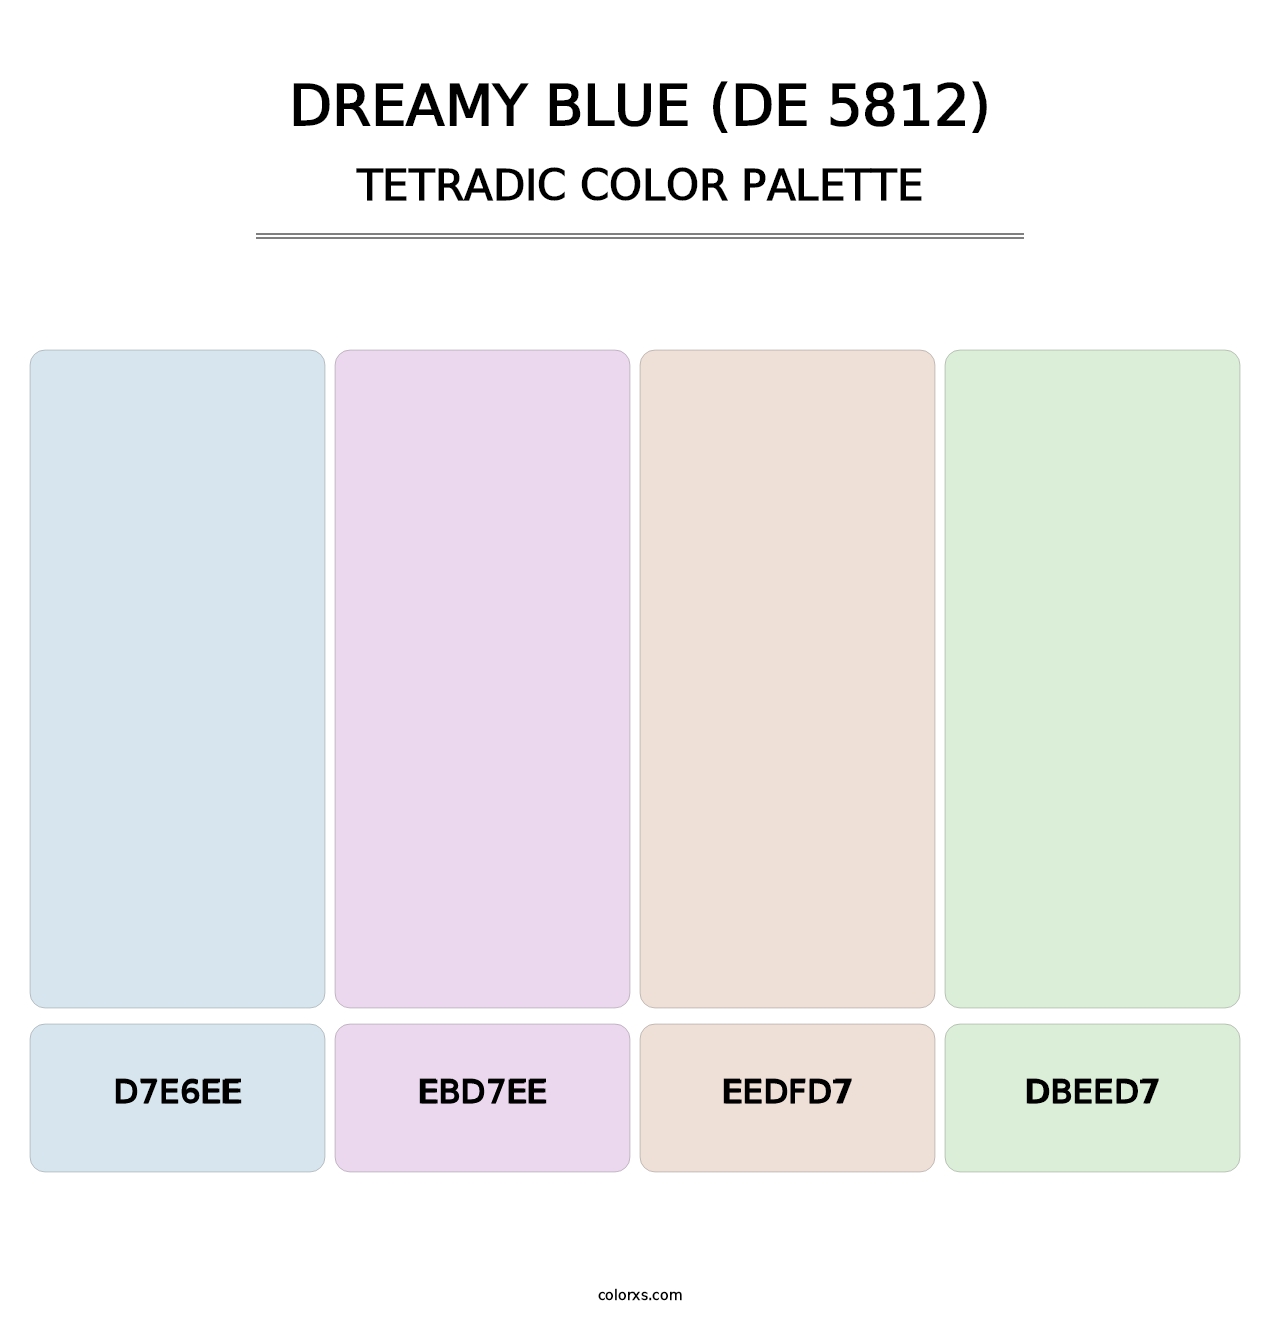 Dreamy Blue (DE 5812) - Tetradic Color Palette